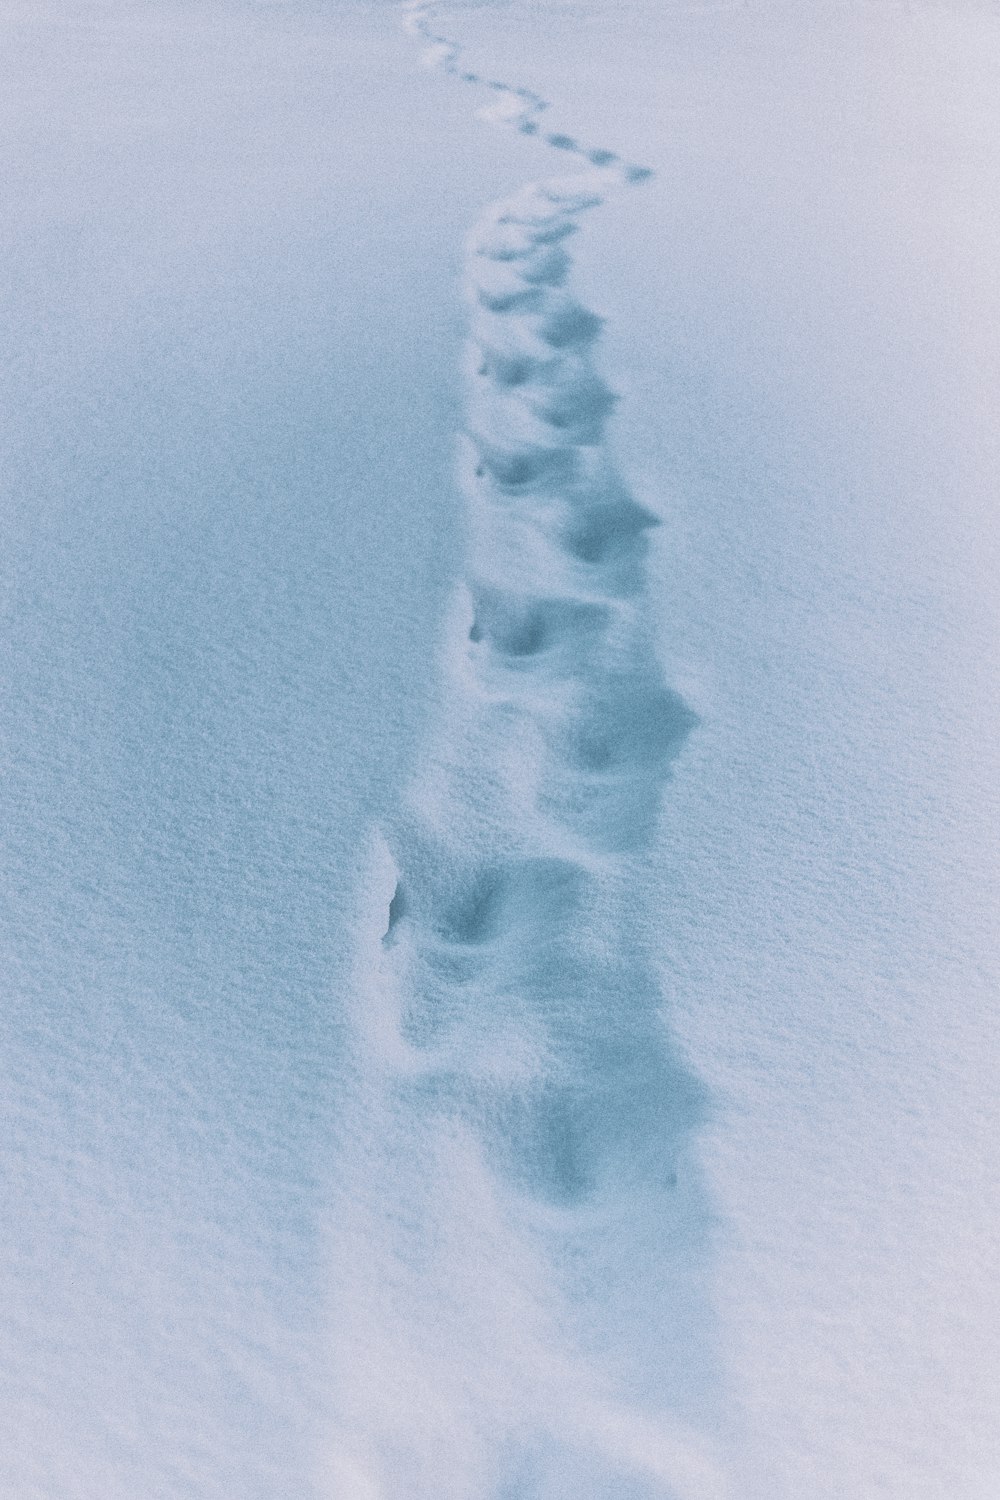 sentiero nella neve